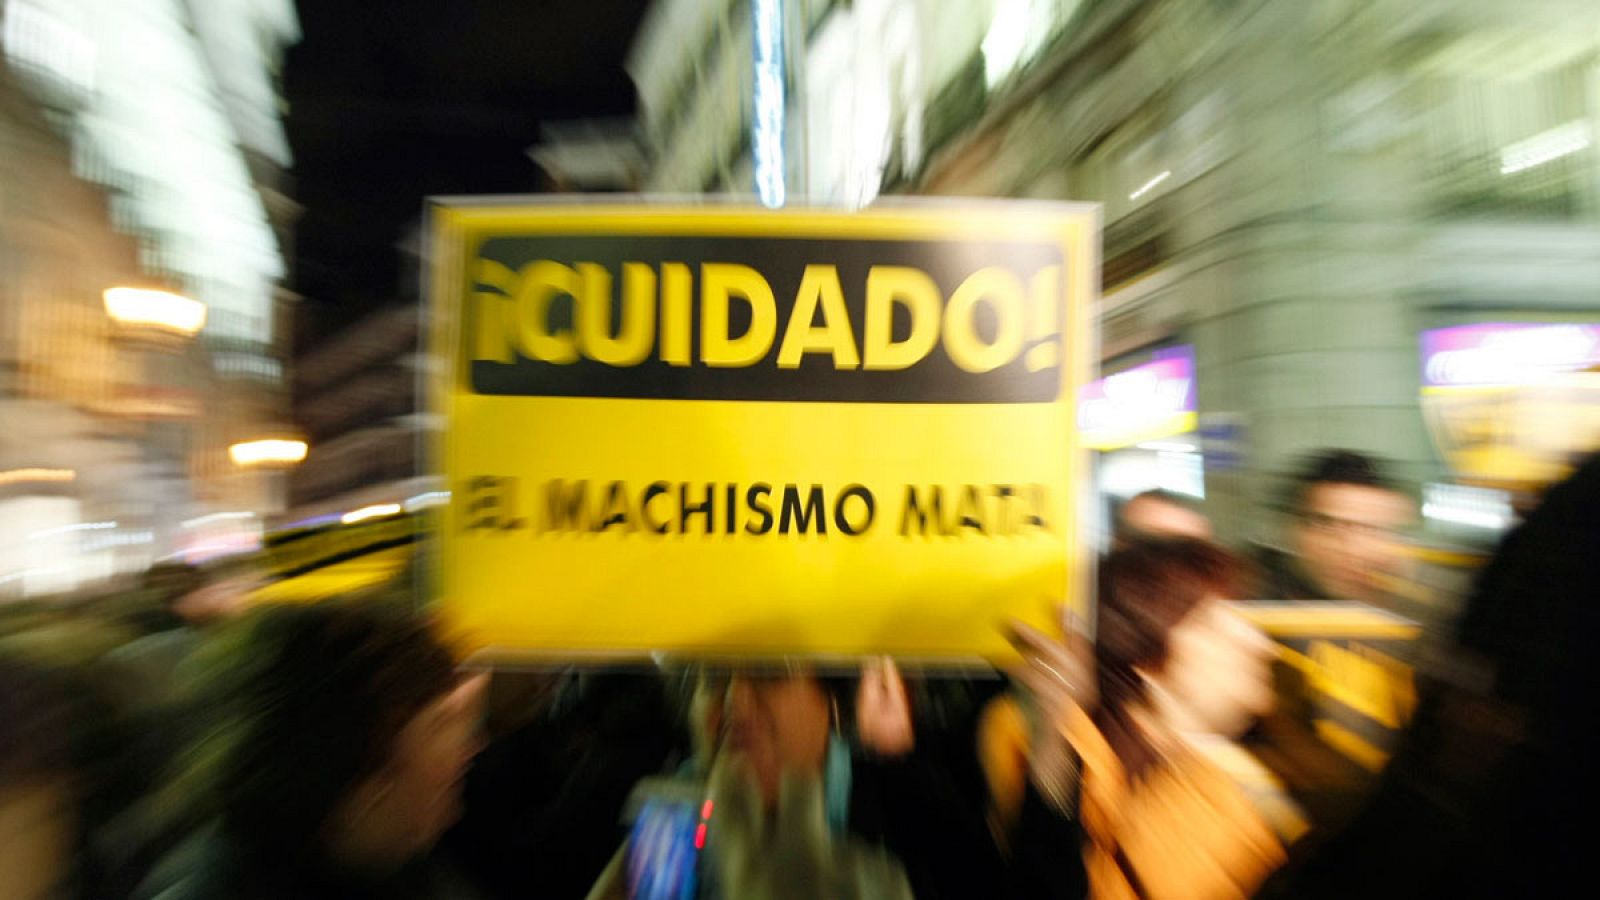 Imagen de una manifestación en Madrid contra la violencia machista.